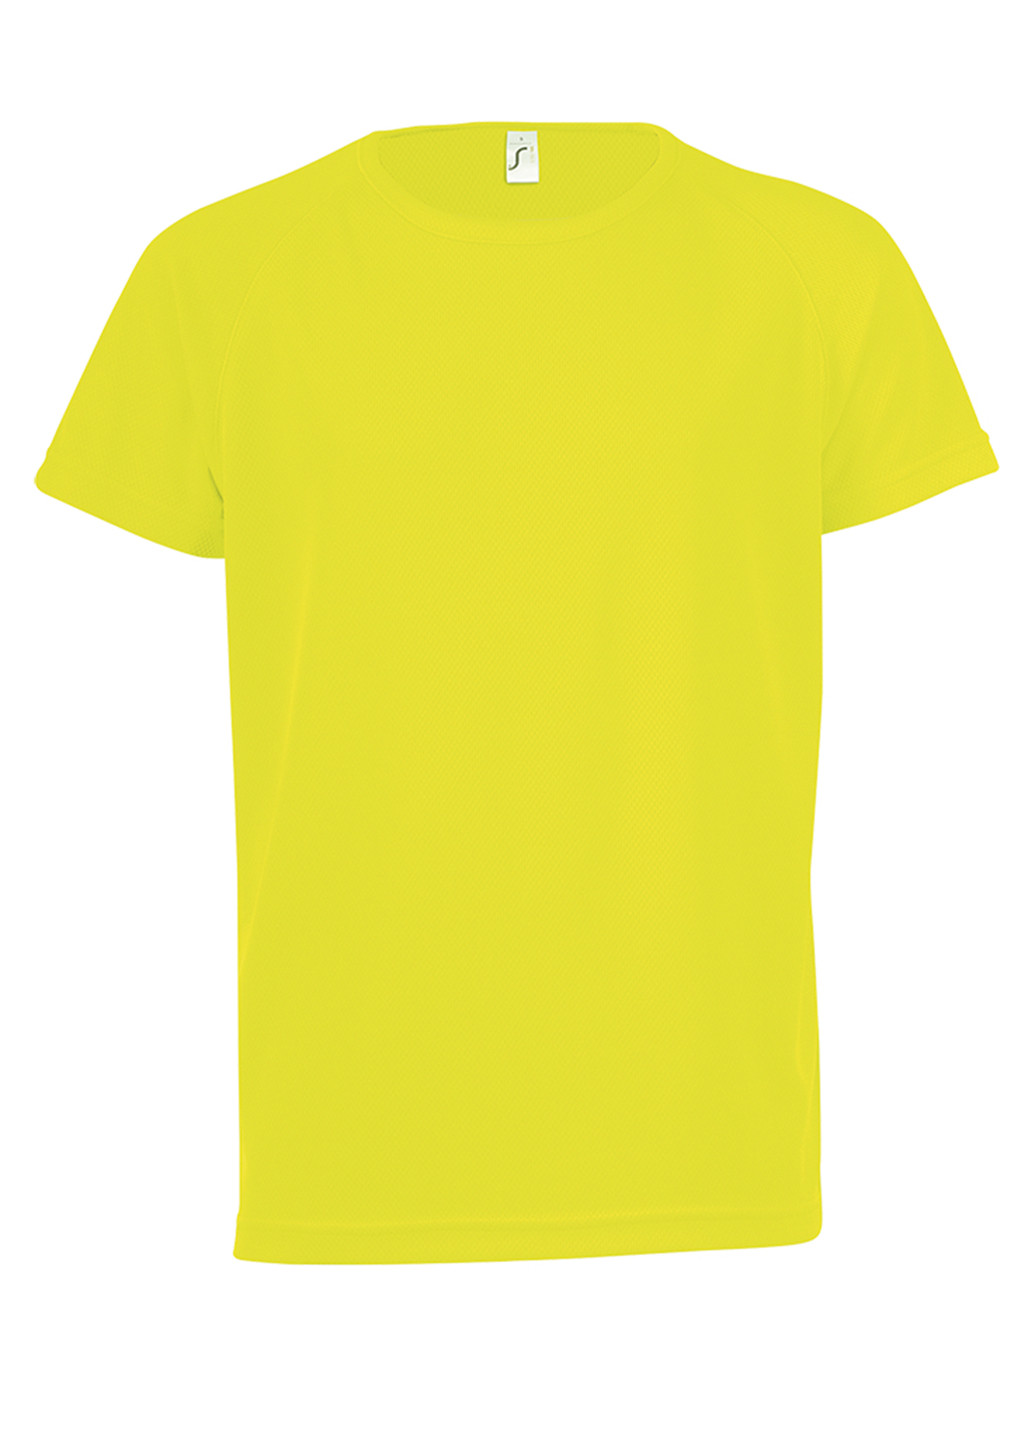 Жовта демісезонна футболка з коротким рукавом Sol's